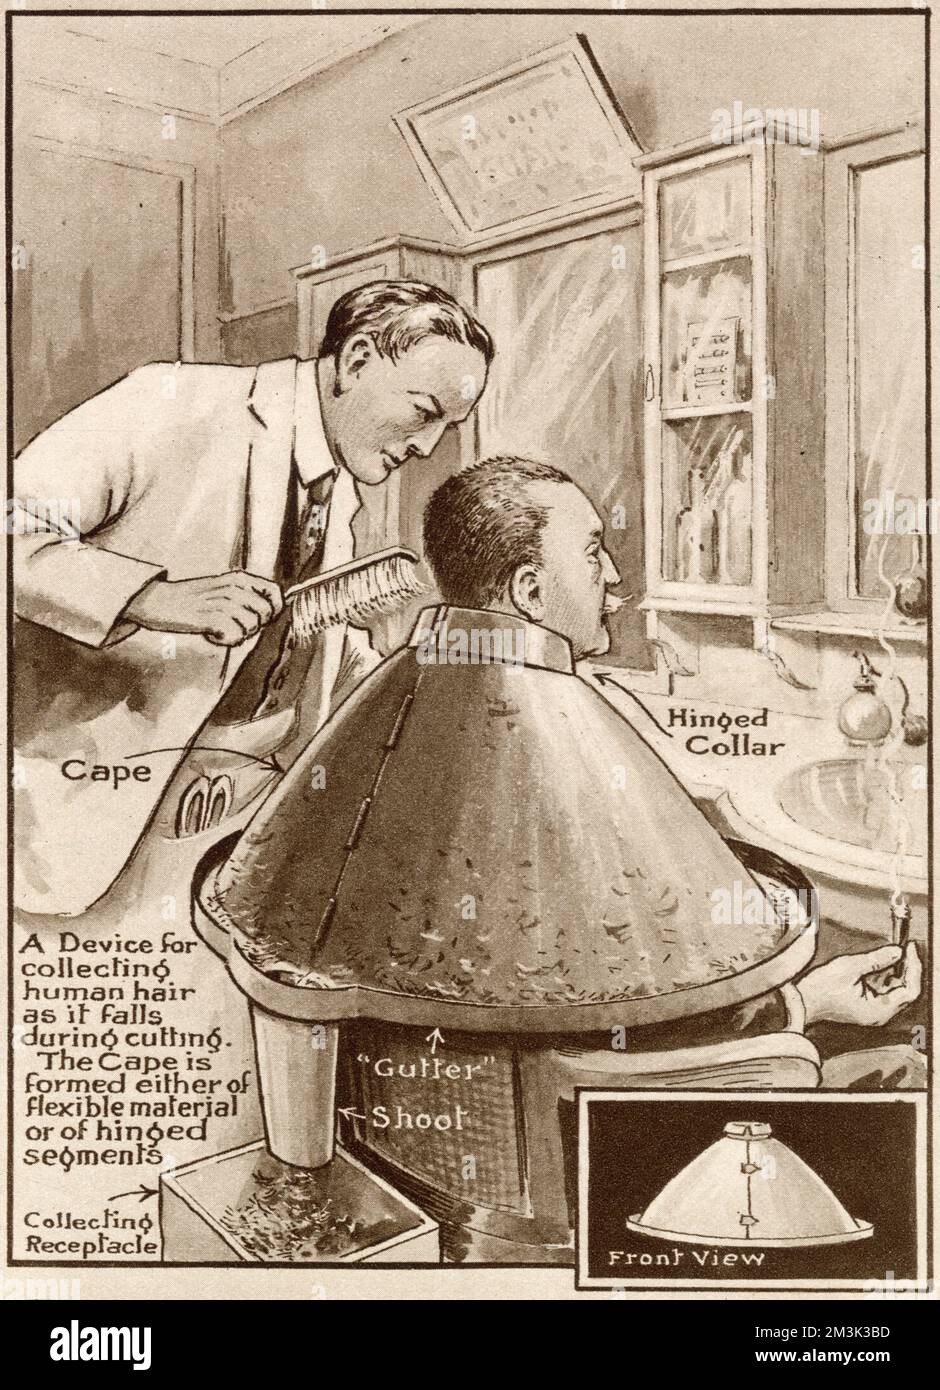 Ein damals neu erfundener Friseurkragen und Umhang, der entworfen wurde, um Haare beim Schneiden zu sammeln. Stockfoto